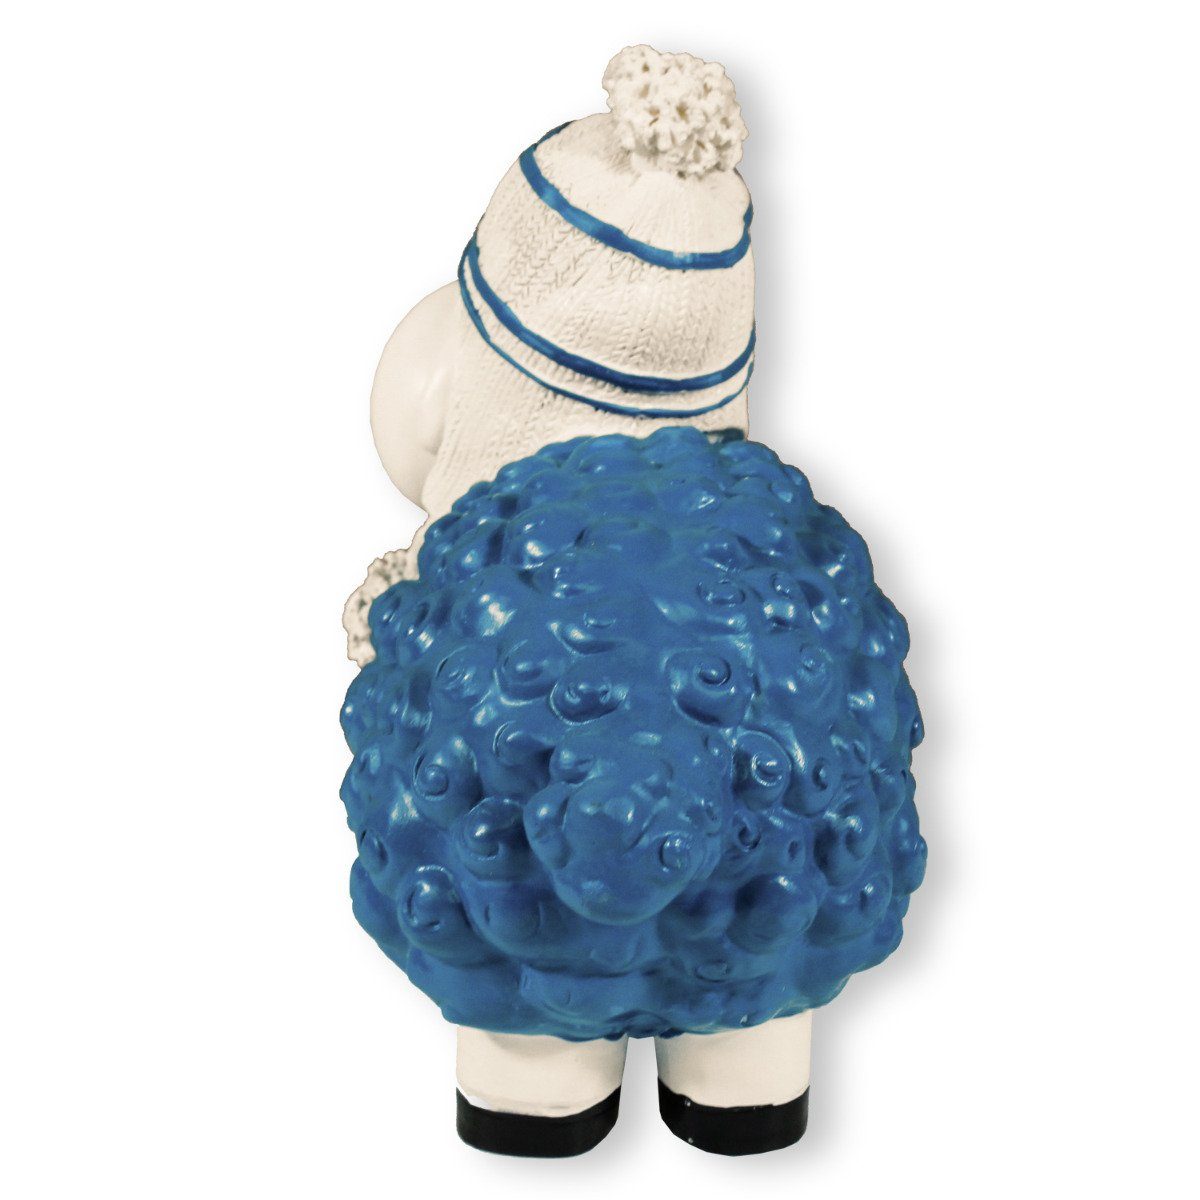 blau mit Schaf, Mütze colourliving Buntes Schaf Gartenfigur Deko Dekofigur lustiges Handbemalt, Wetterfest, Schaf